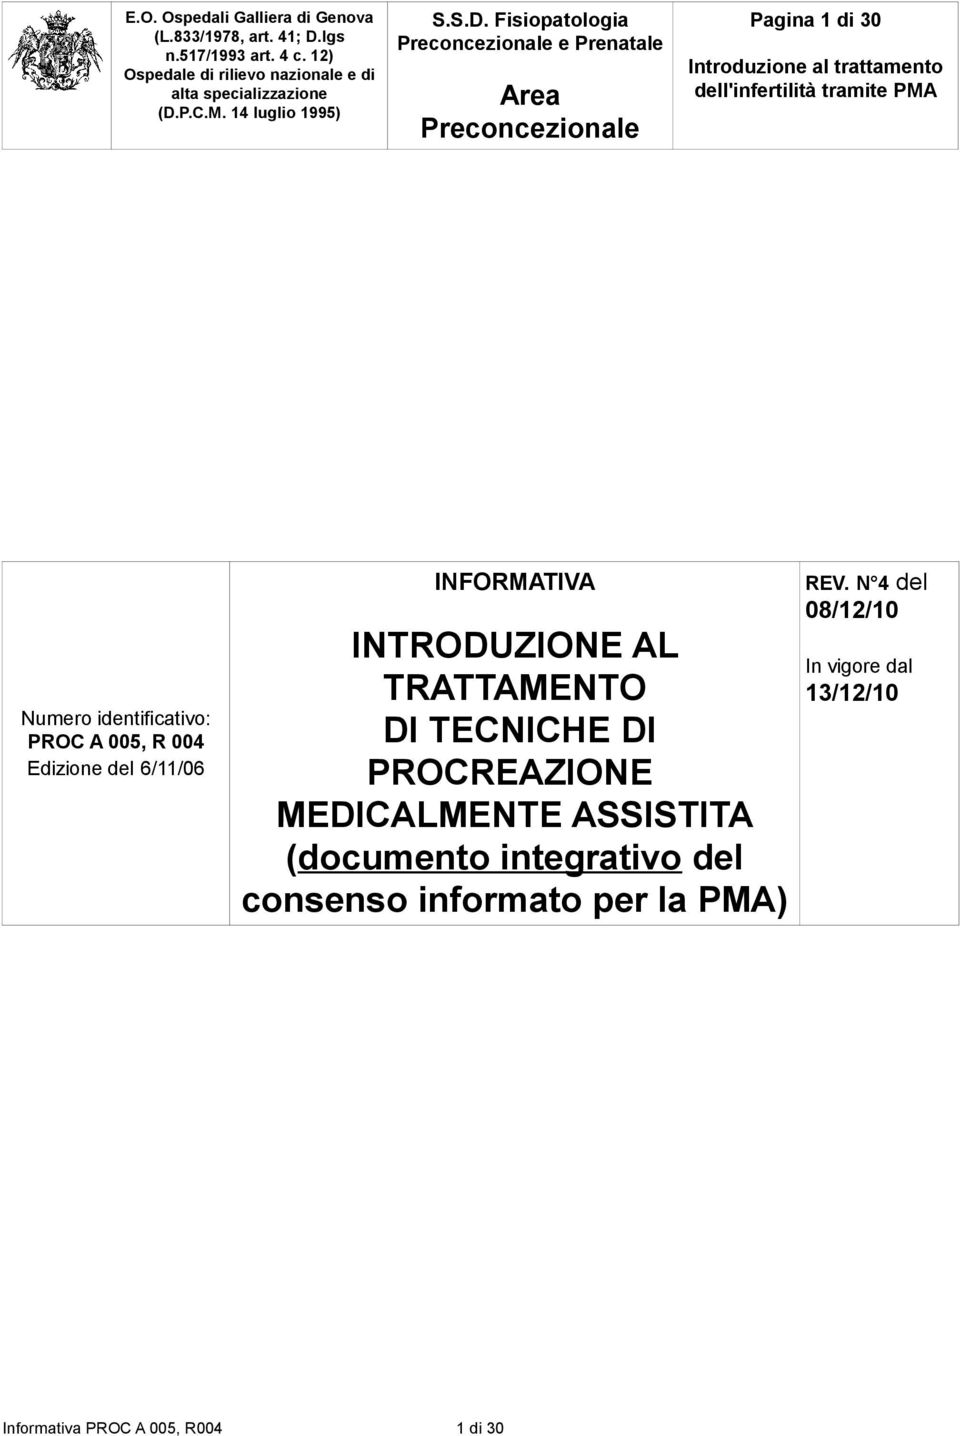 MEDICALMENTE ASSISTITA (documento integrativo del consenso informato per la